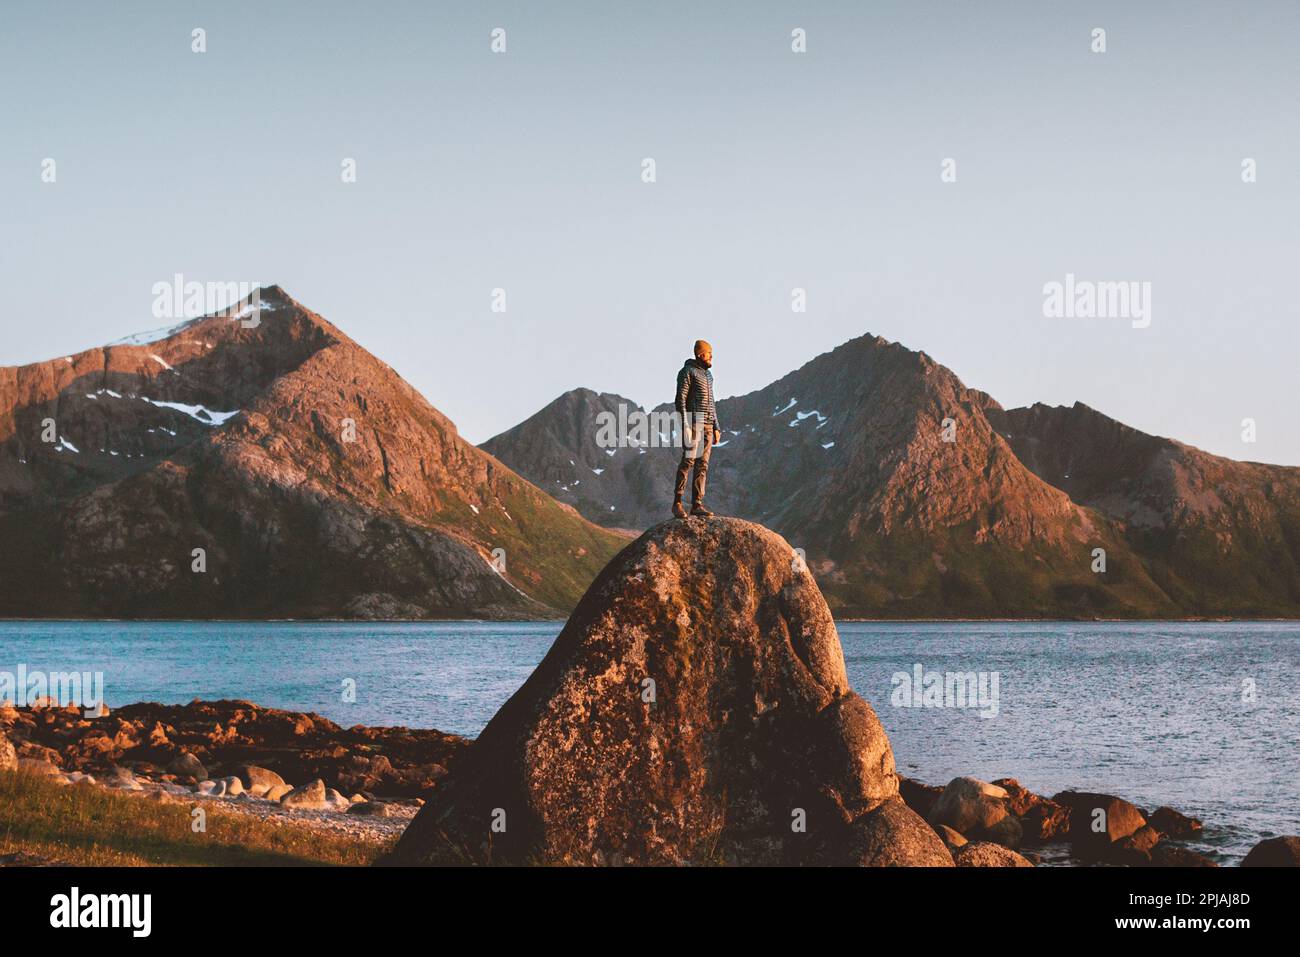 Ein Mann, der in Norwegen unterwegs ist Outdoor-Abenteuer Lifestyle Sunset Mountains Landschaft Touristen Stand alone on Rock Freedom Concept Stockfoto